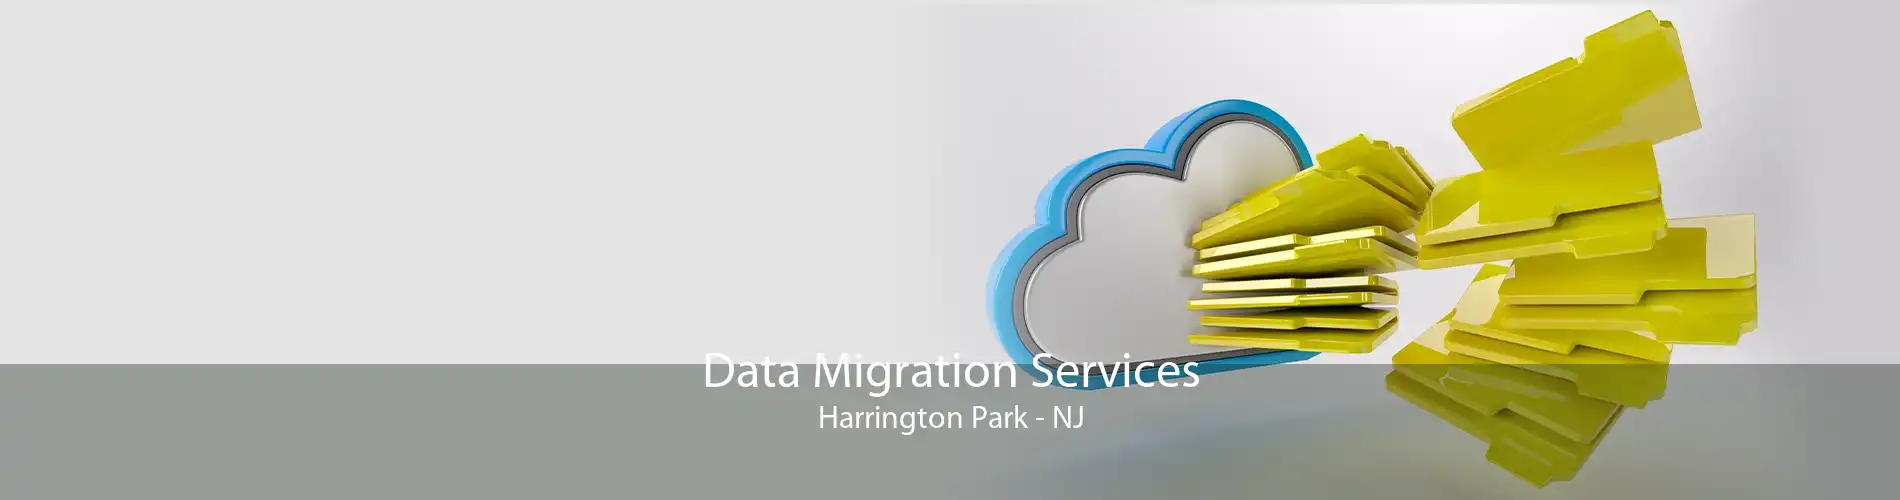 Data Migration Services Harrington Park - NJ